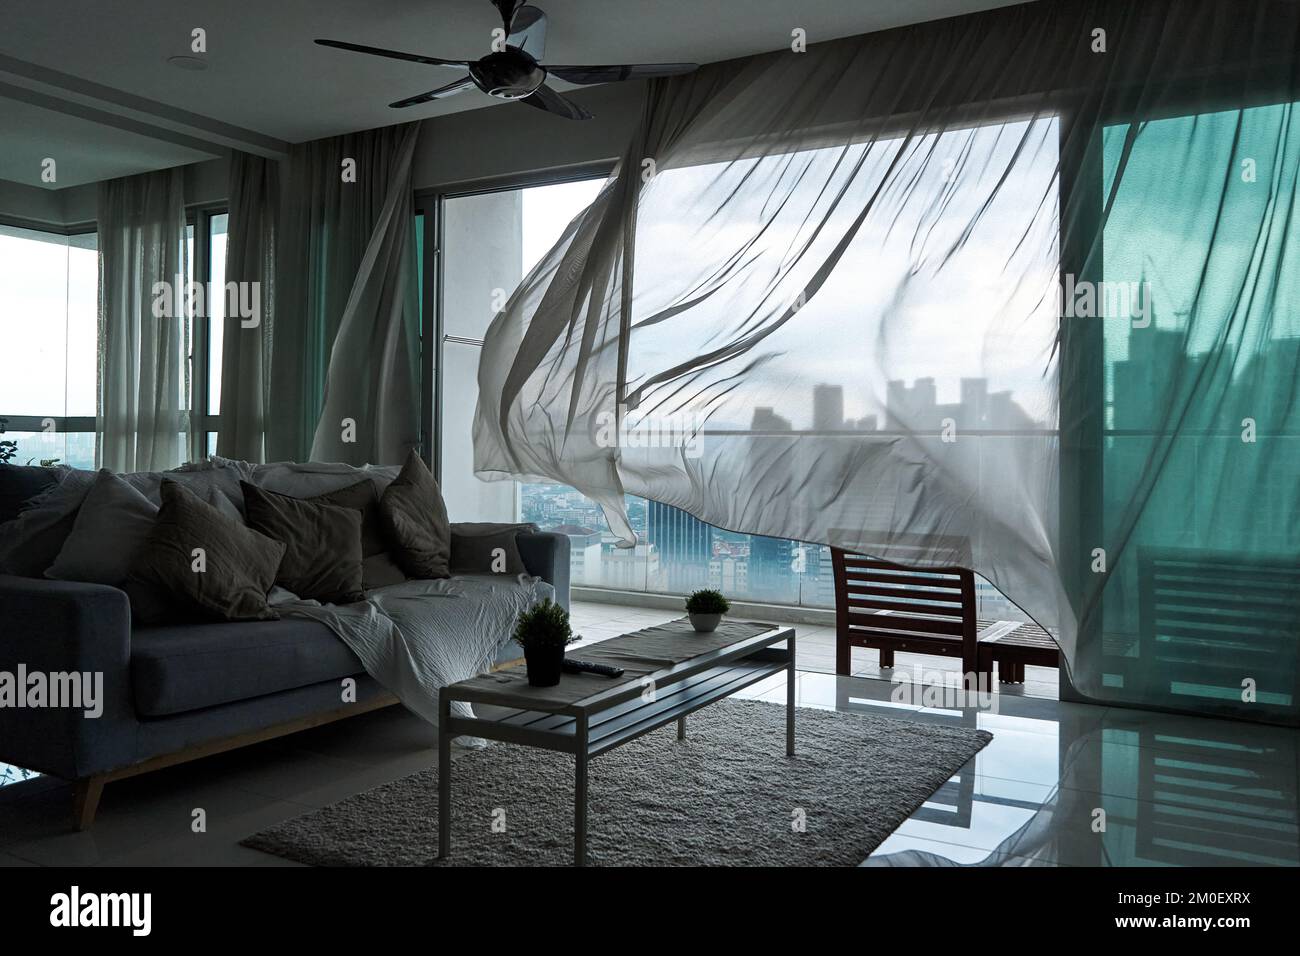 Le vent rousse le rideau de la fenêtre panoramique avec un paysage urbain  Photo Stock - Alamy